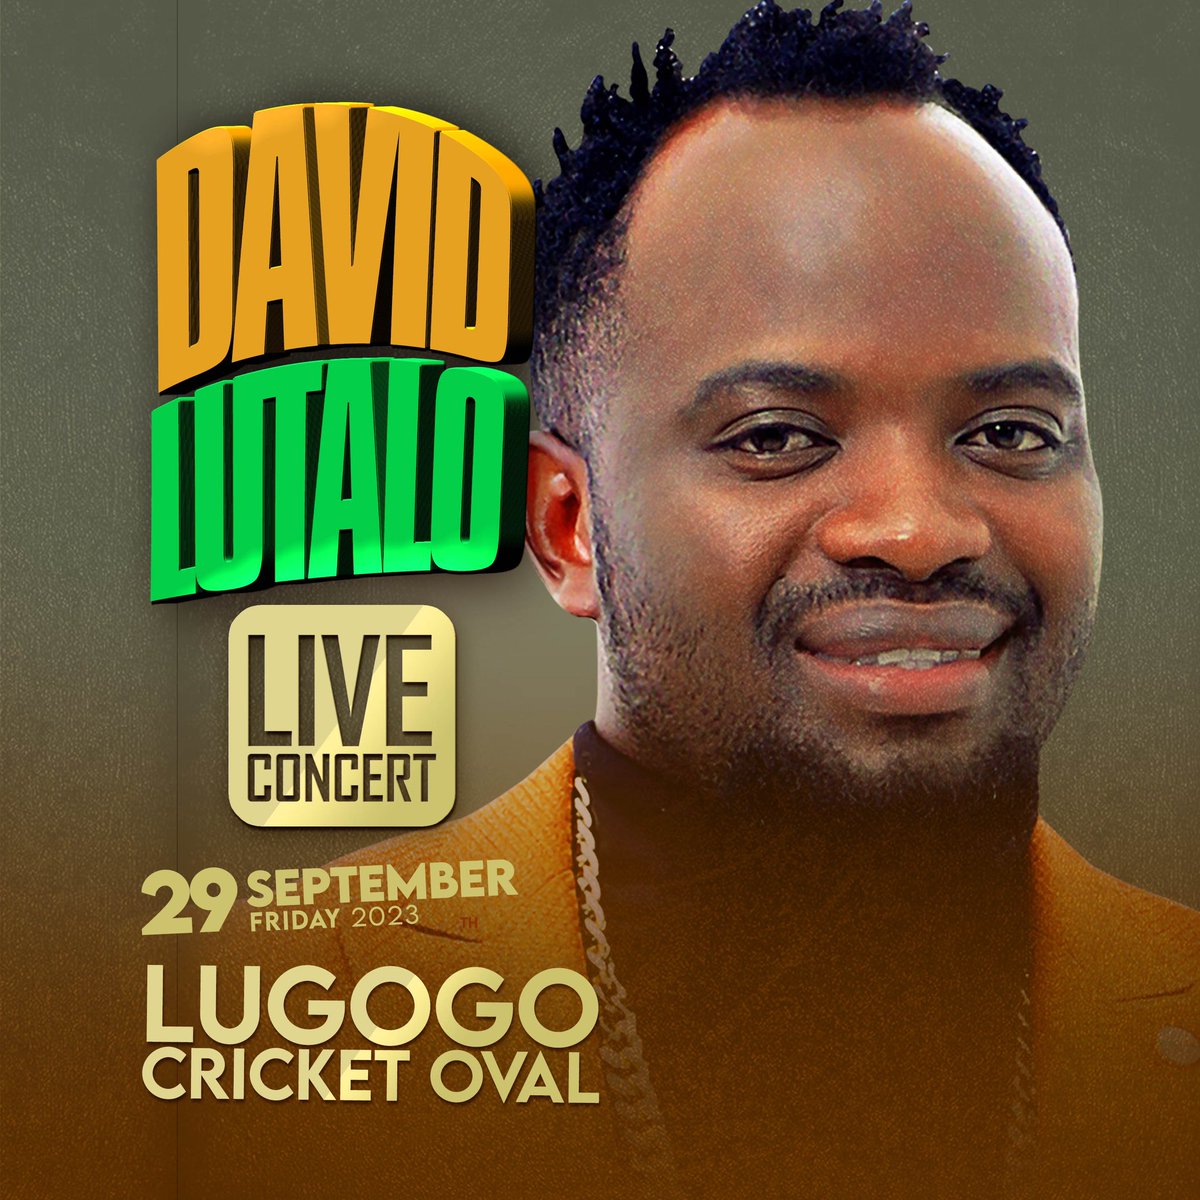 29th Sept | LIVE IN CONCERT
LUGOGO CRICKET OVAL | @davidlutalolive